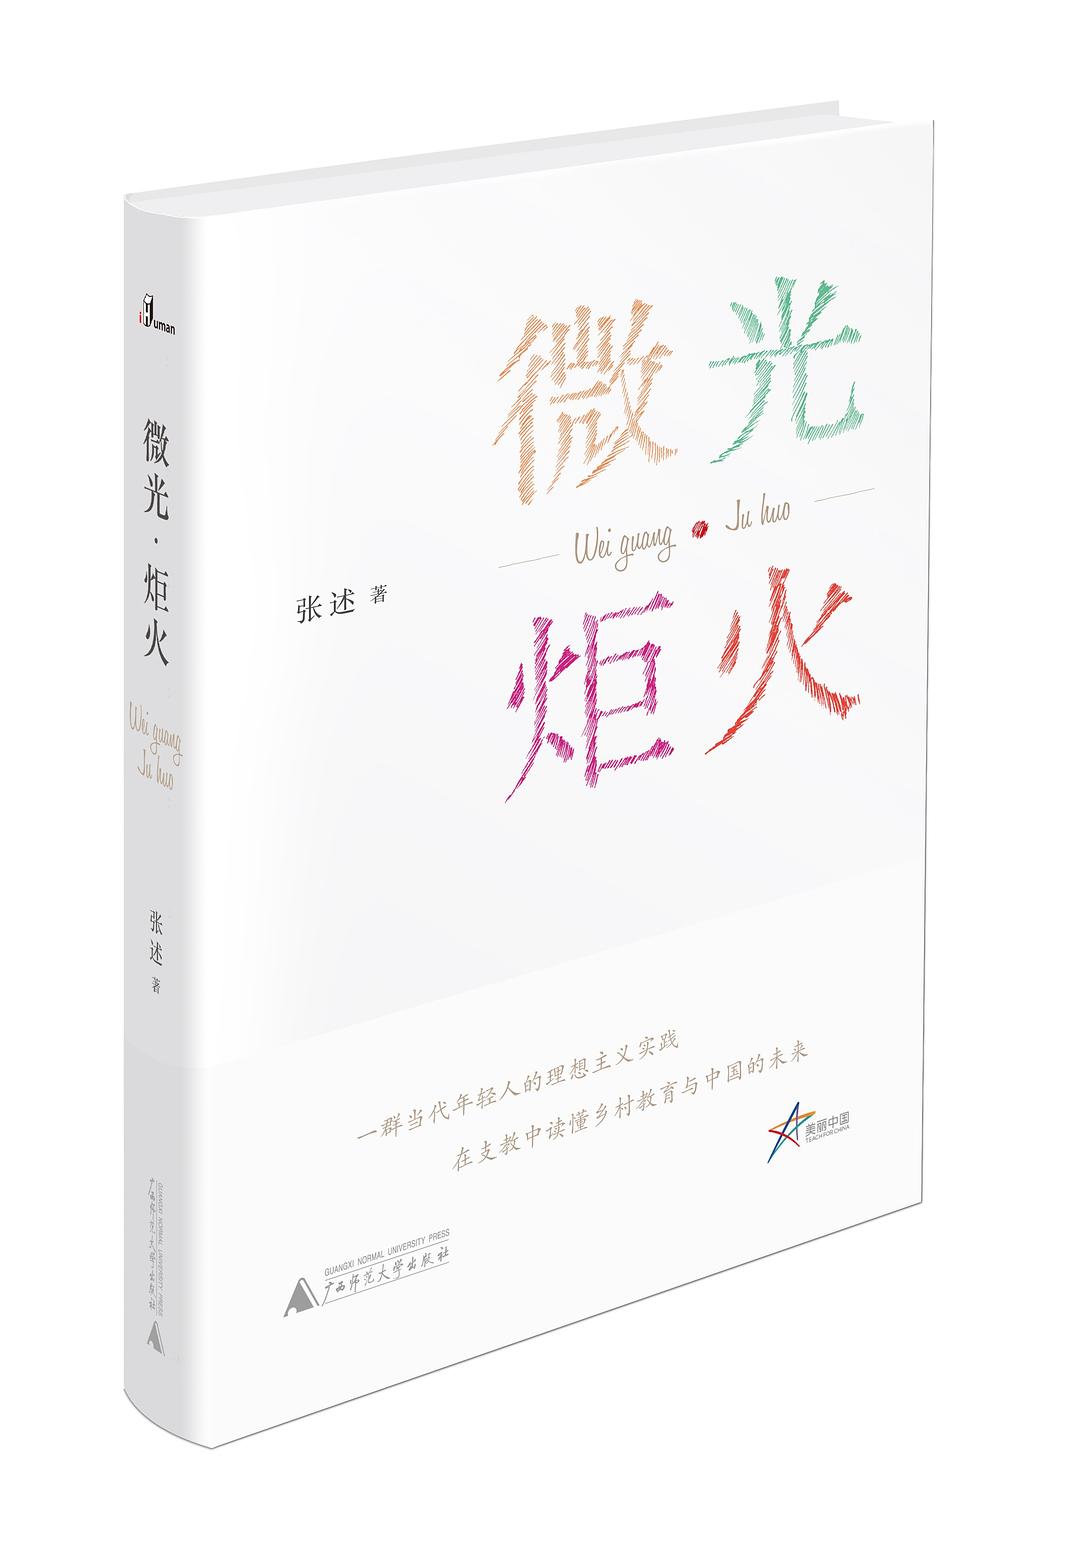 2020第4期（总第70期）献礼教师节云读书会：《微光·炬火》美丽中国——支教故事成功举办